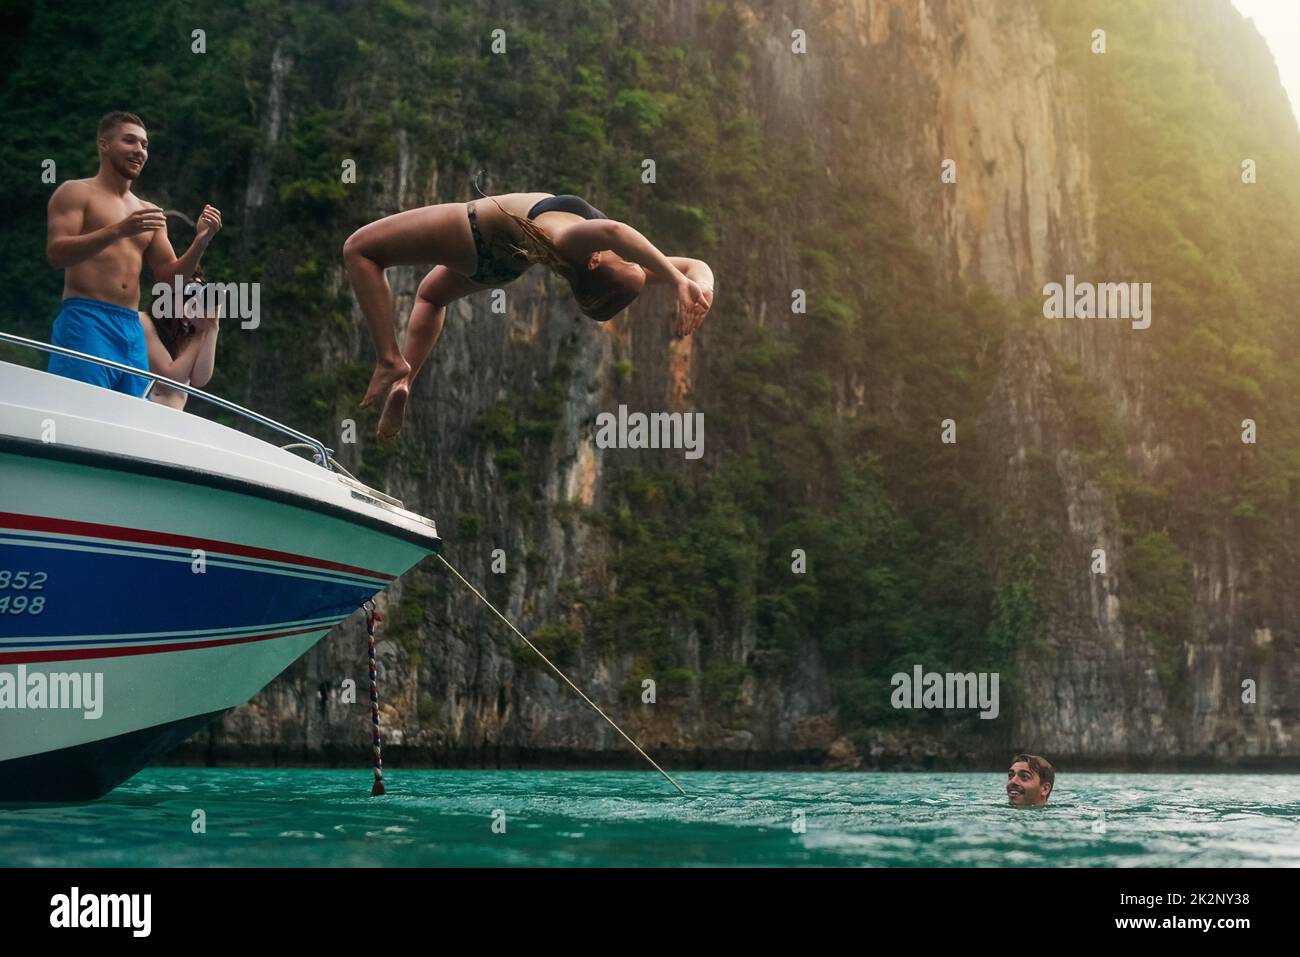 Nessun rischio, nessuna ricompensa. Scatto di una giovane donna che fa un backflip fuori una barca mentre i suoi amici guardano. Foto Stock